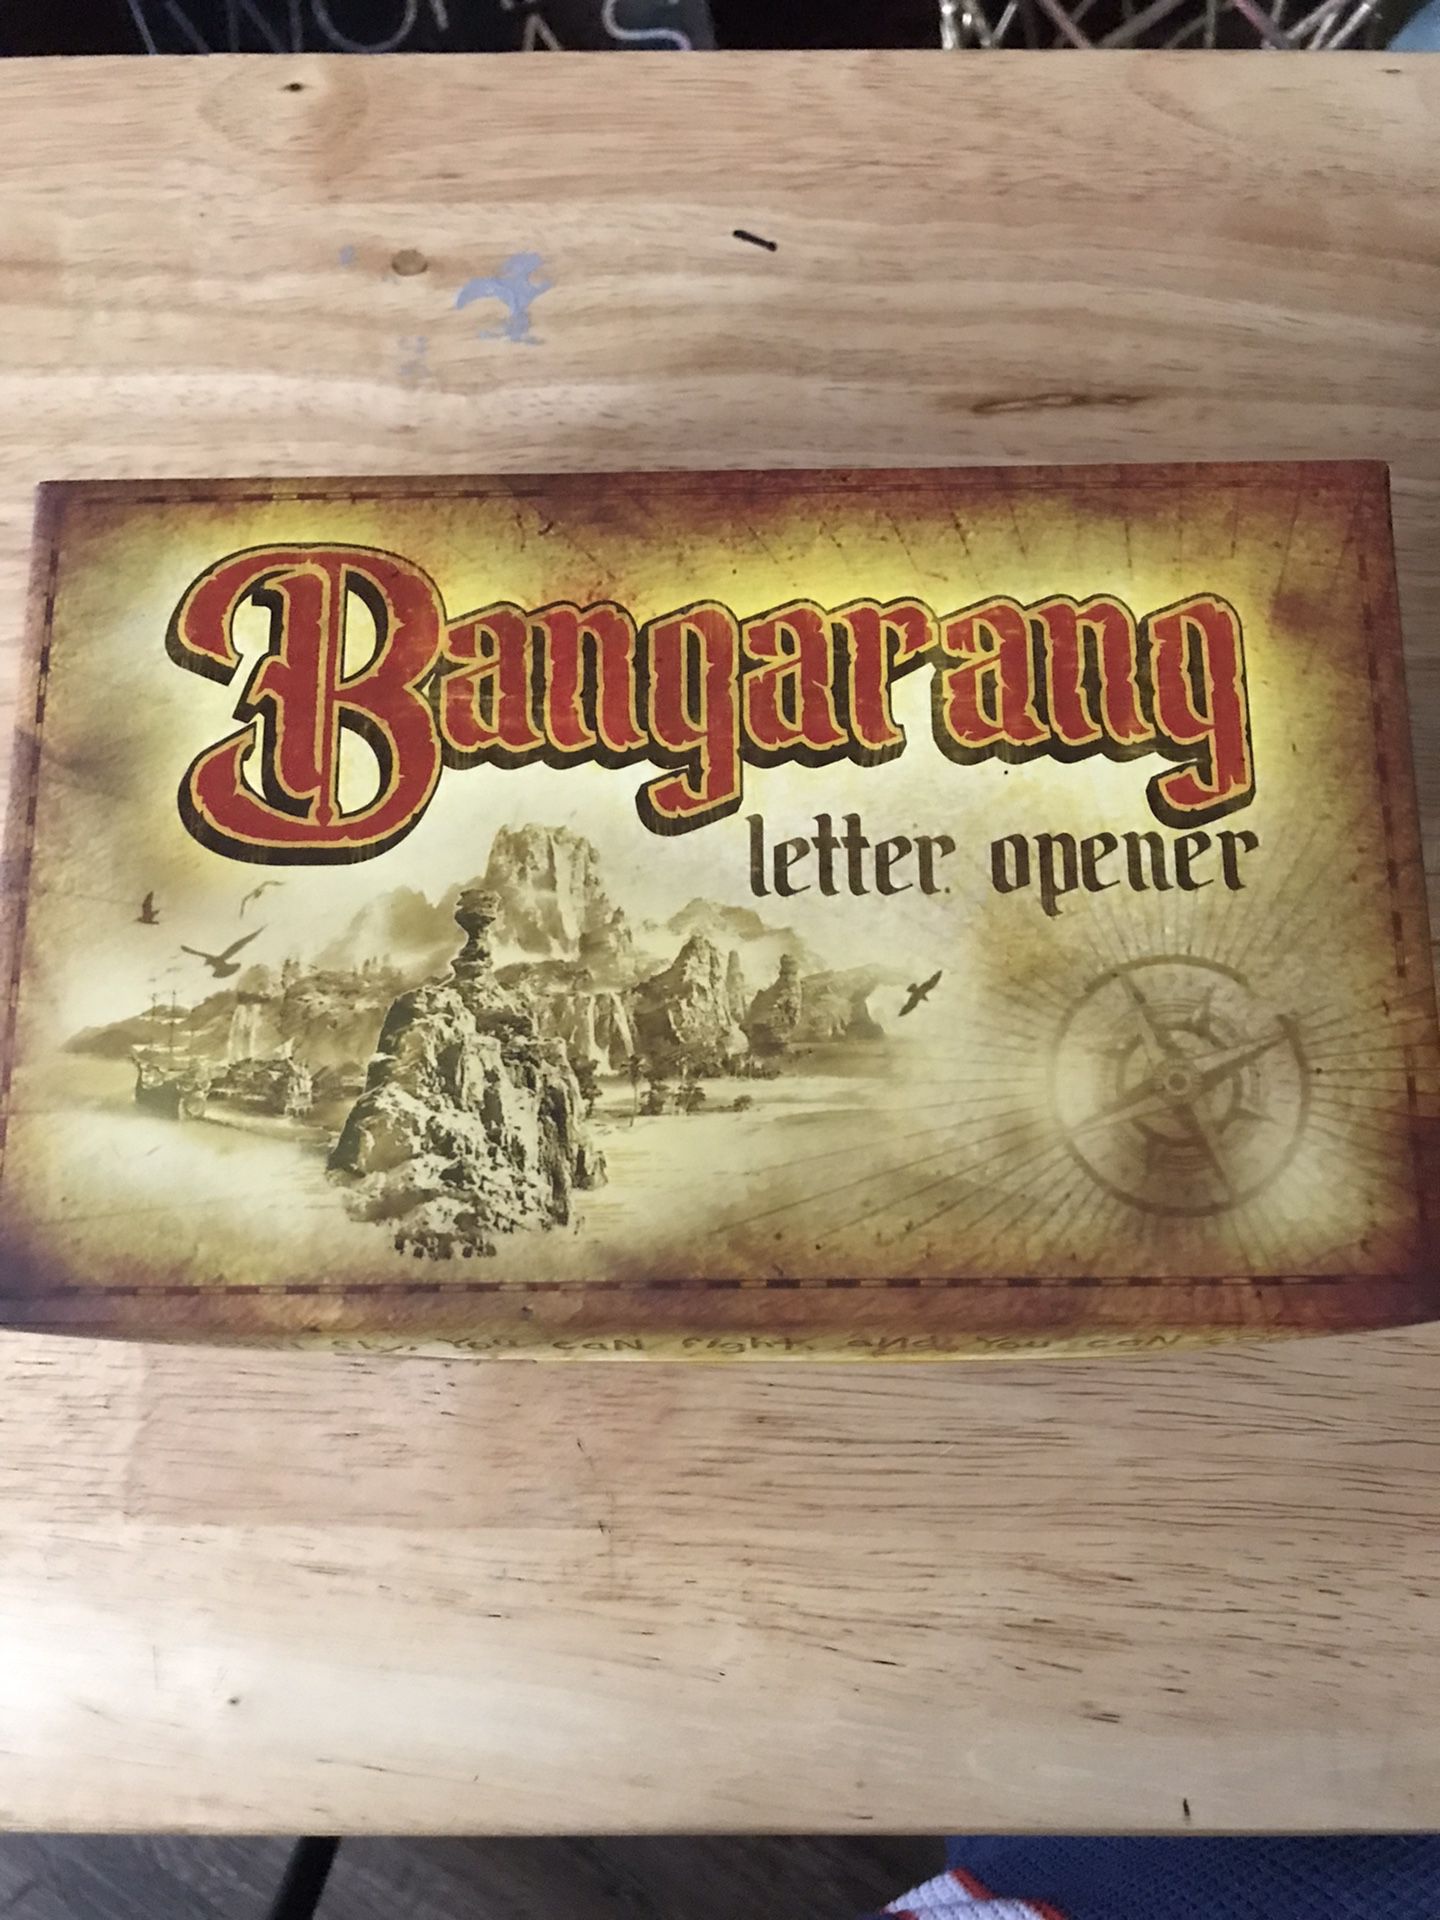 Bangarang (Miniature Sword) Letter Opener from Peter Pan Hook